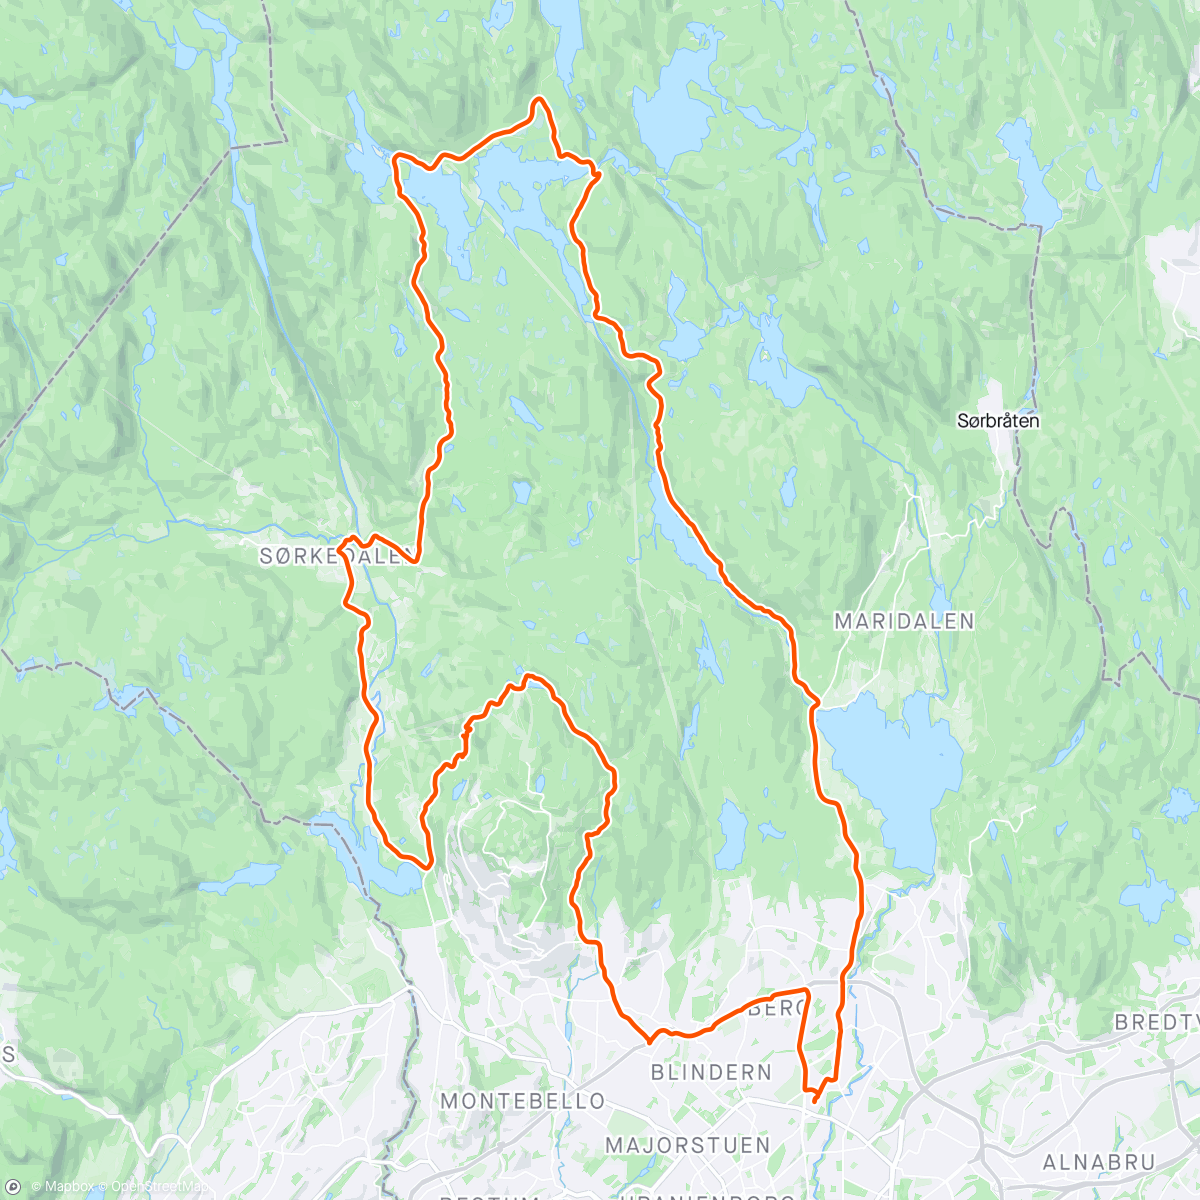 Mapa da atividade, Lunch Ride - Sagene-Kikut-Sørkedalen-Bogstad-Tryvannstua-Sagene... 🌤🚴‍♂️😎
Stikker'n Bogstad-Tryvannstua var ikke et sjakktrekk - skiløype på toppen Wyller til Stua gitt! 🤣